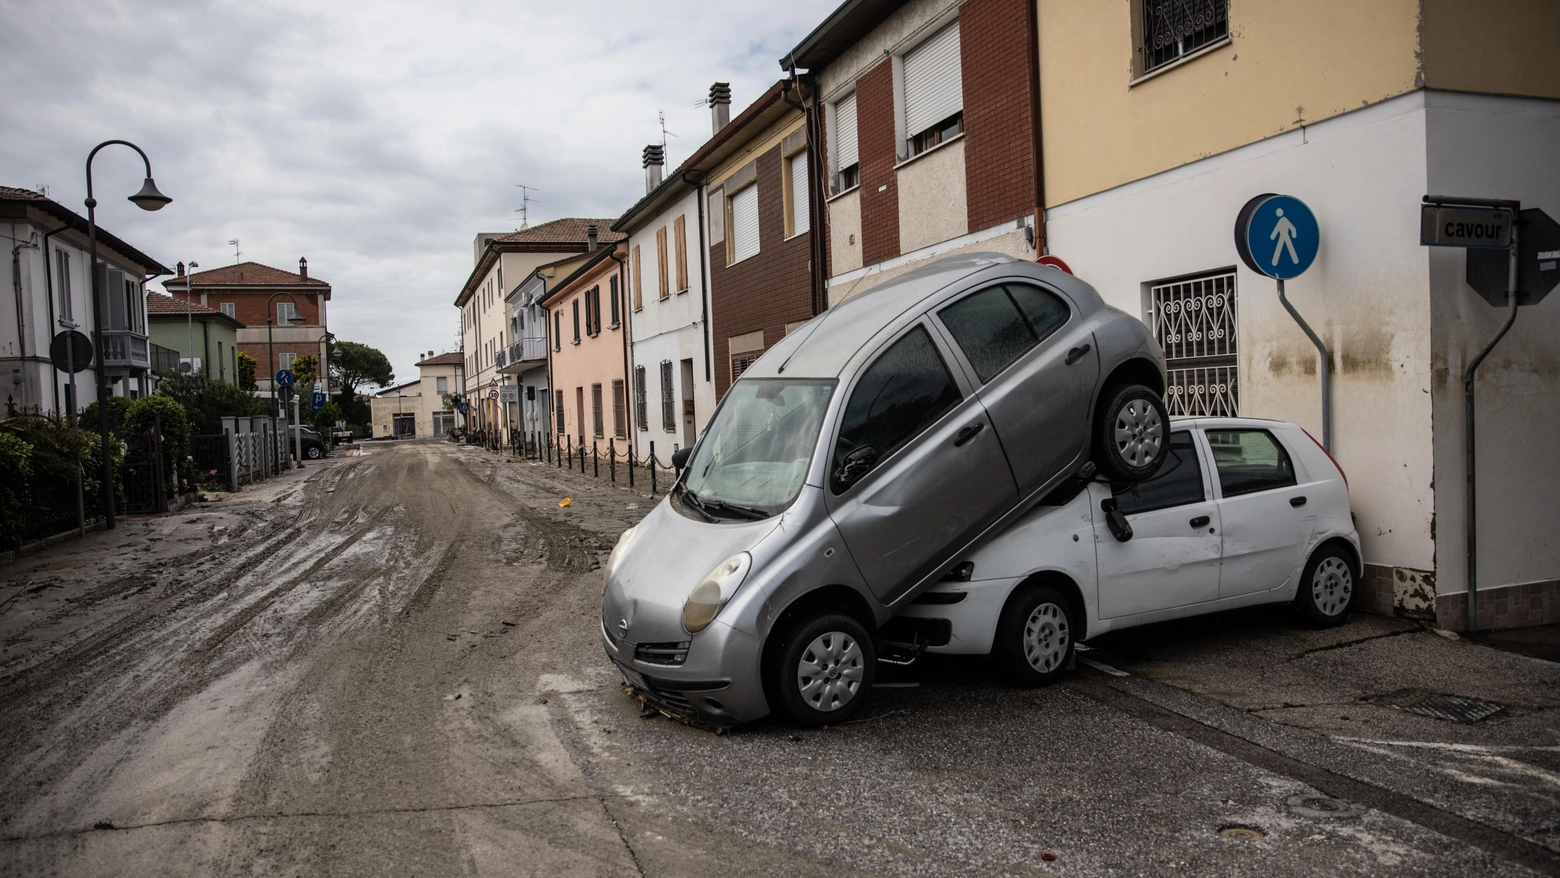 Auto distrutte a Sant'Agata sul Santerno, in provincia di Ravenna (Foto: Max Cavallari)